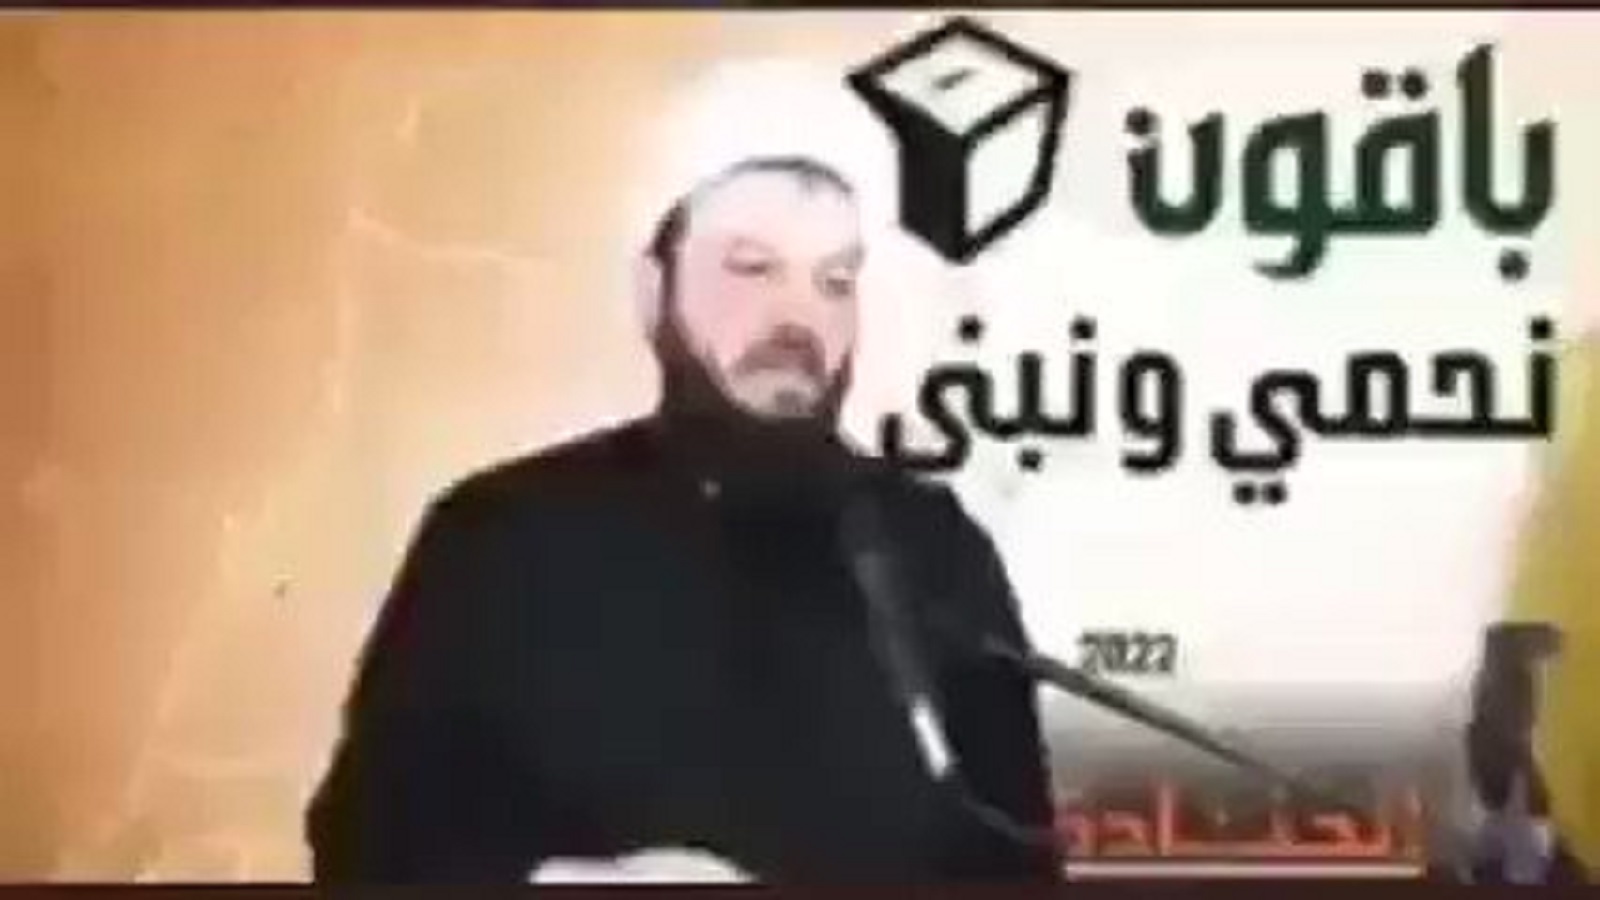 فيديو مفبرك لمنتحل صفة شيخ شيعي..آخر الابتكارات الانتخابية